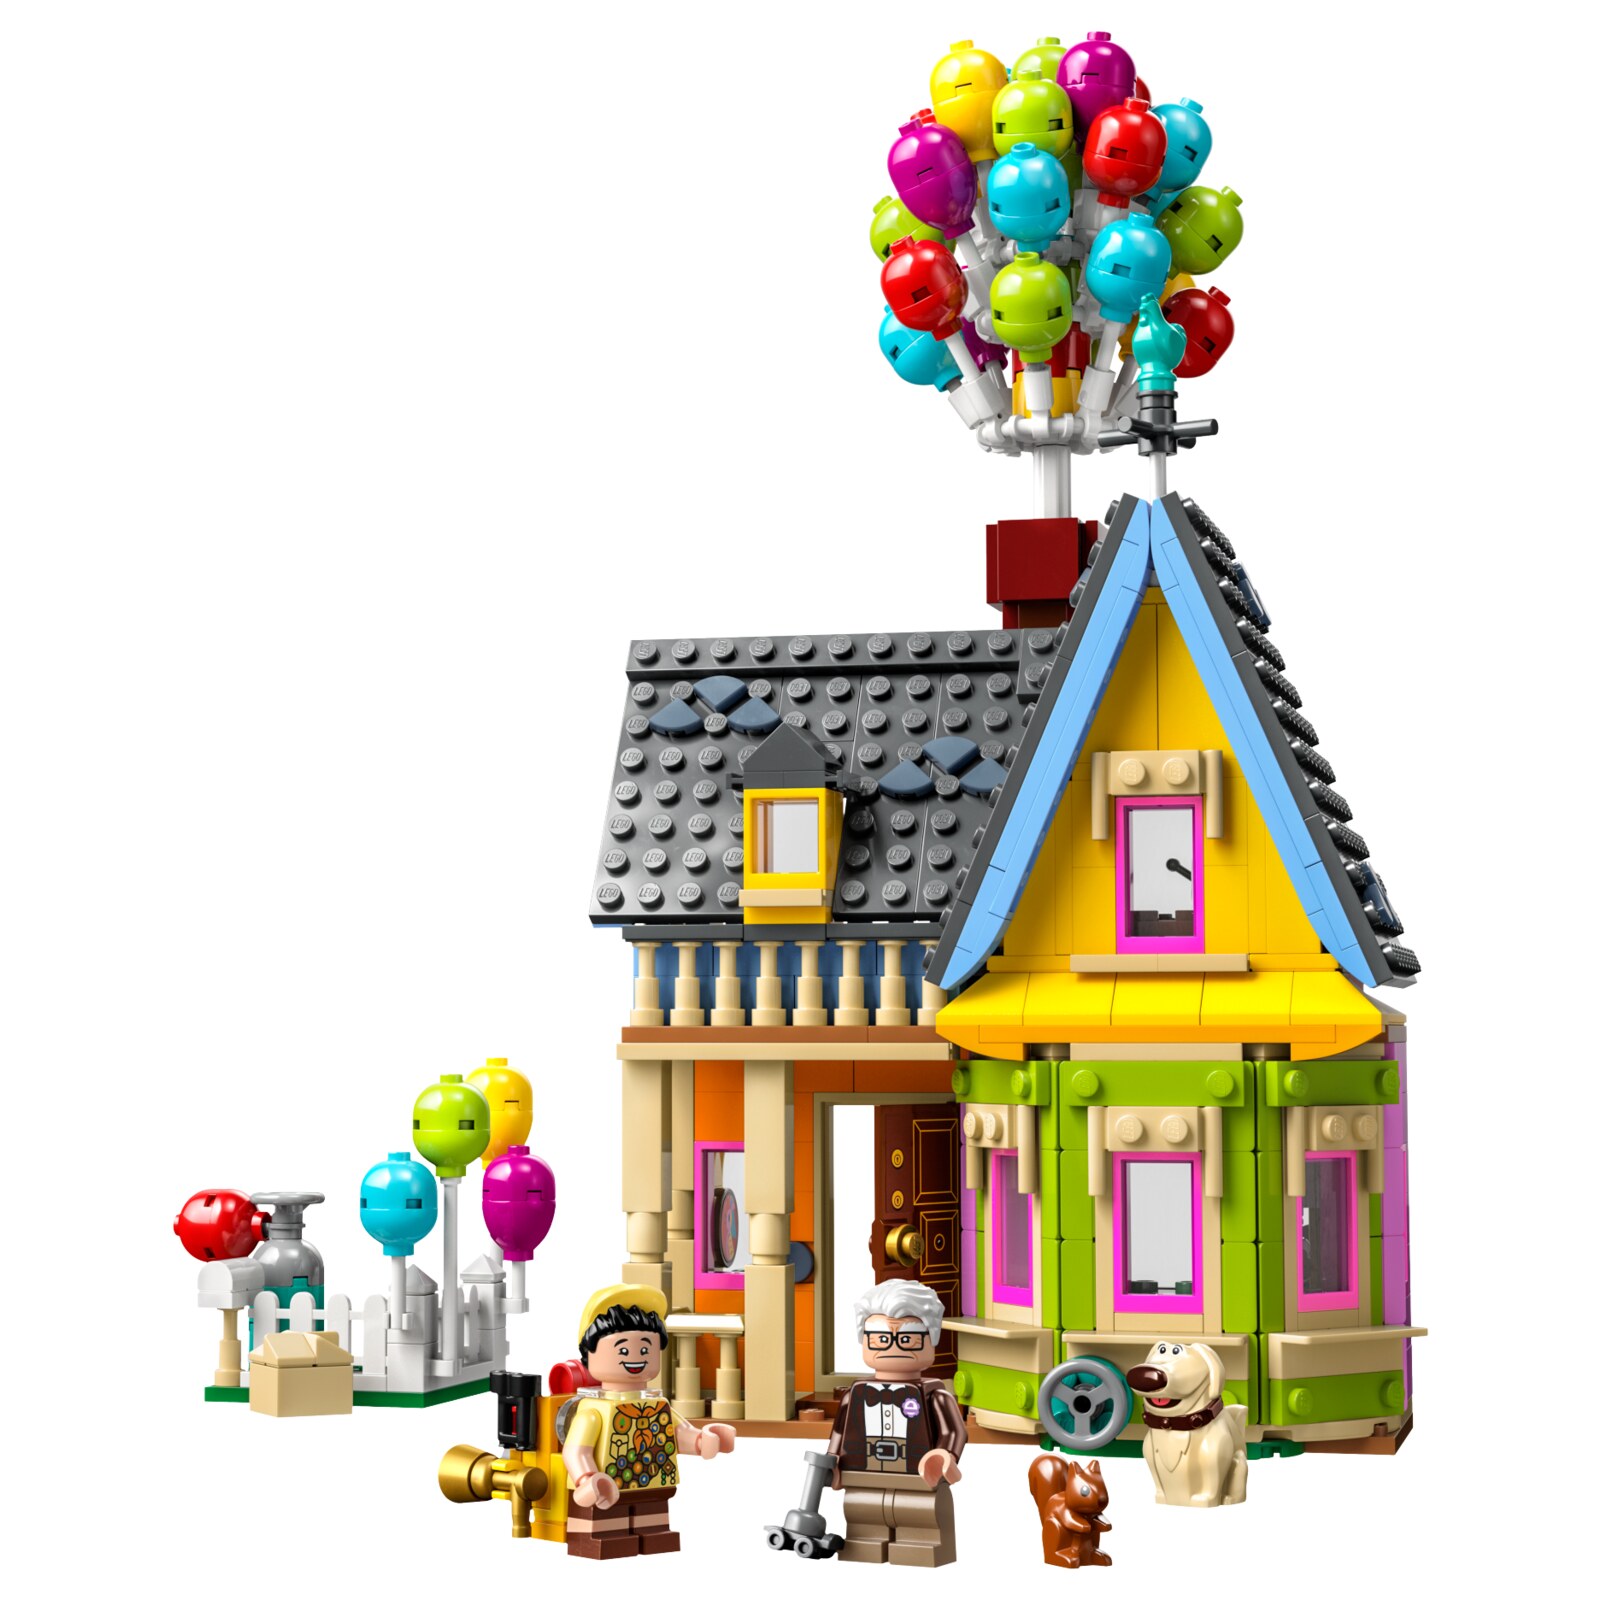 Конструктор LEGO Disney Дом из мультфильма Вверх, 598 деталей, 43217 конструктор ascelot сm 4014 дом с шарами